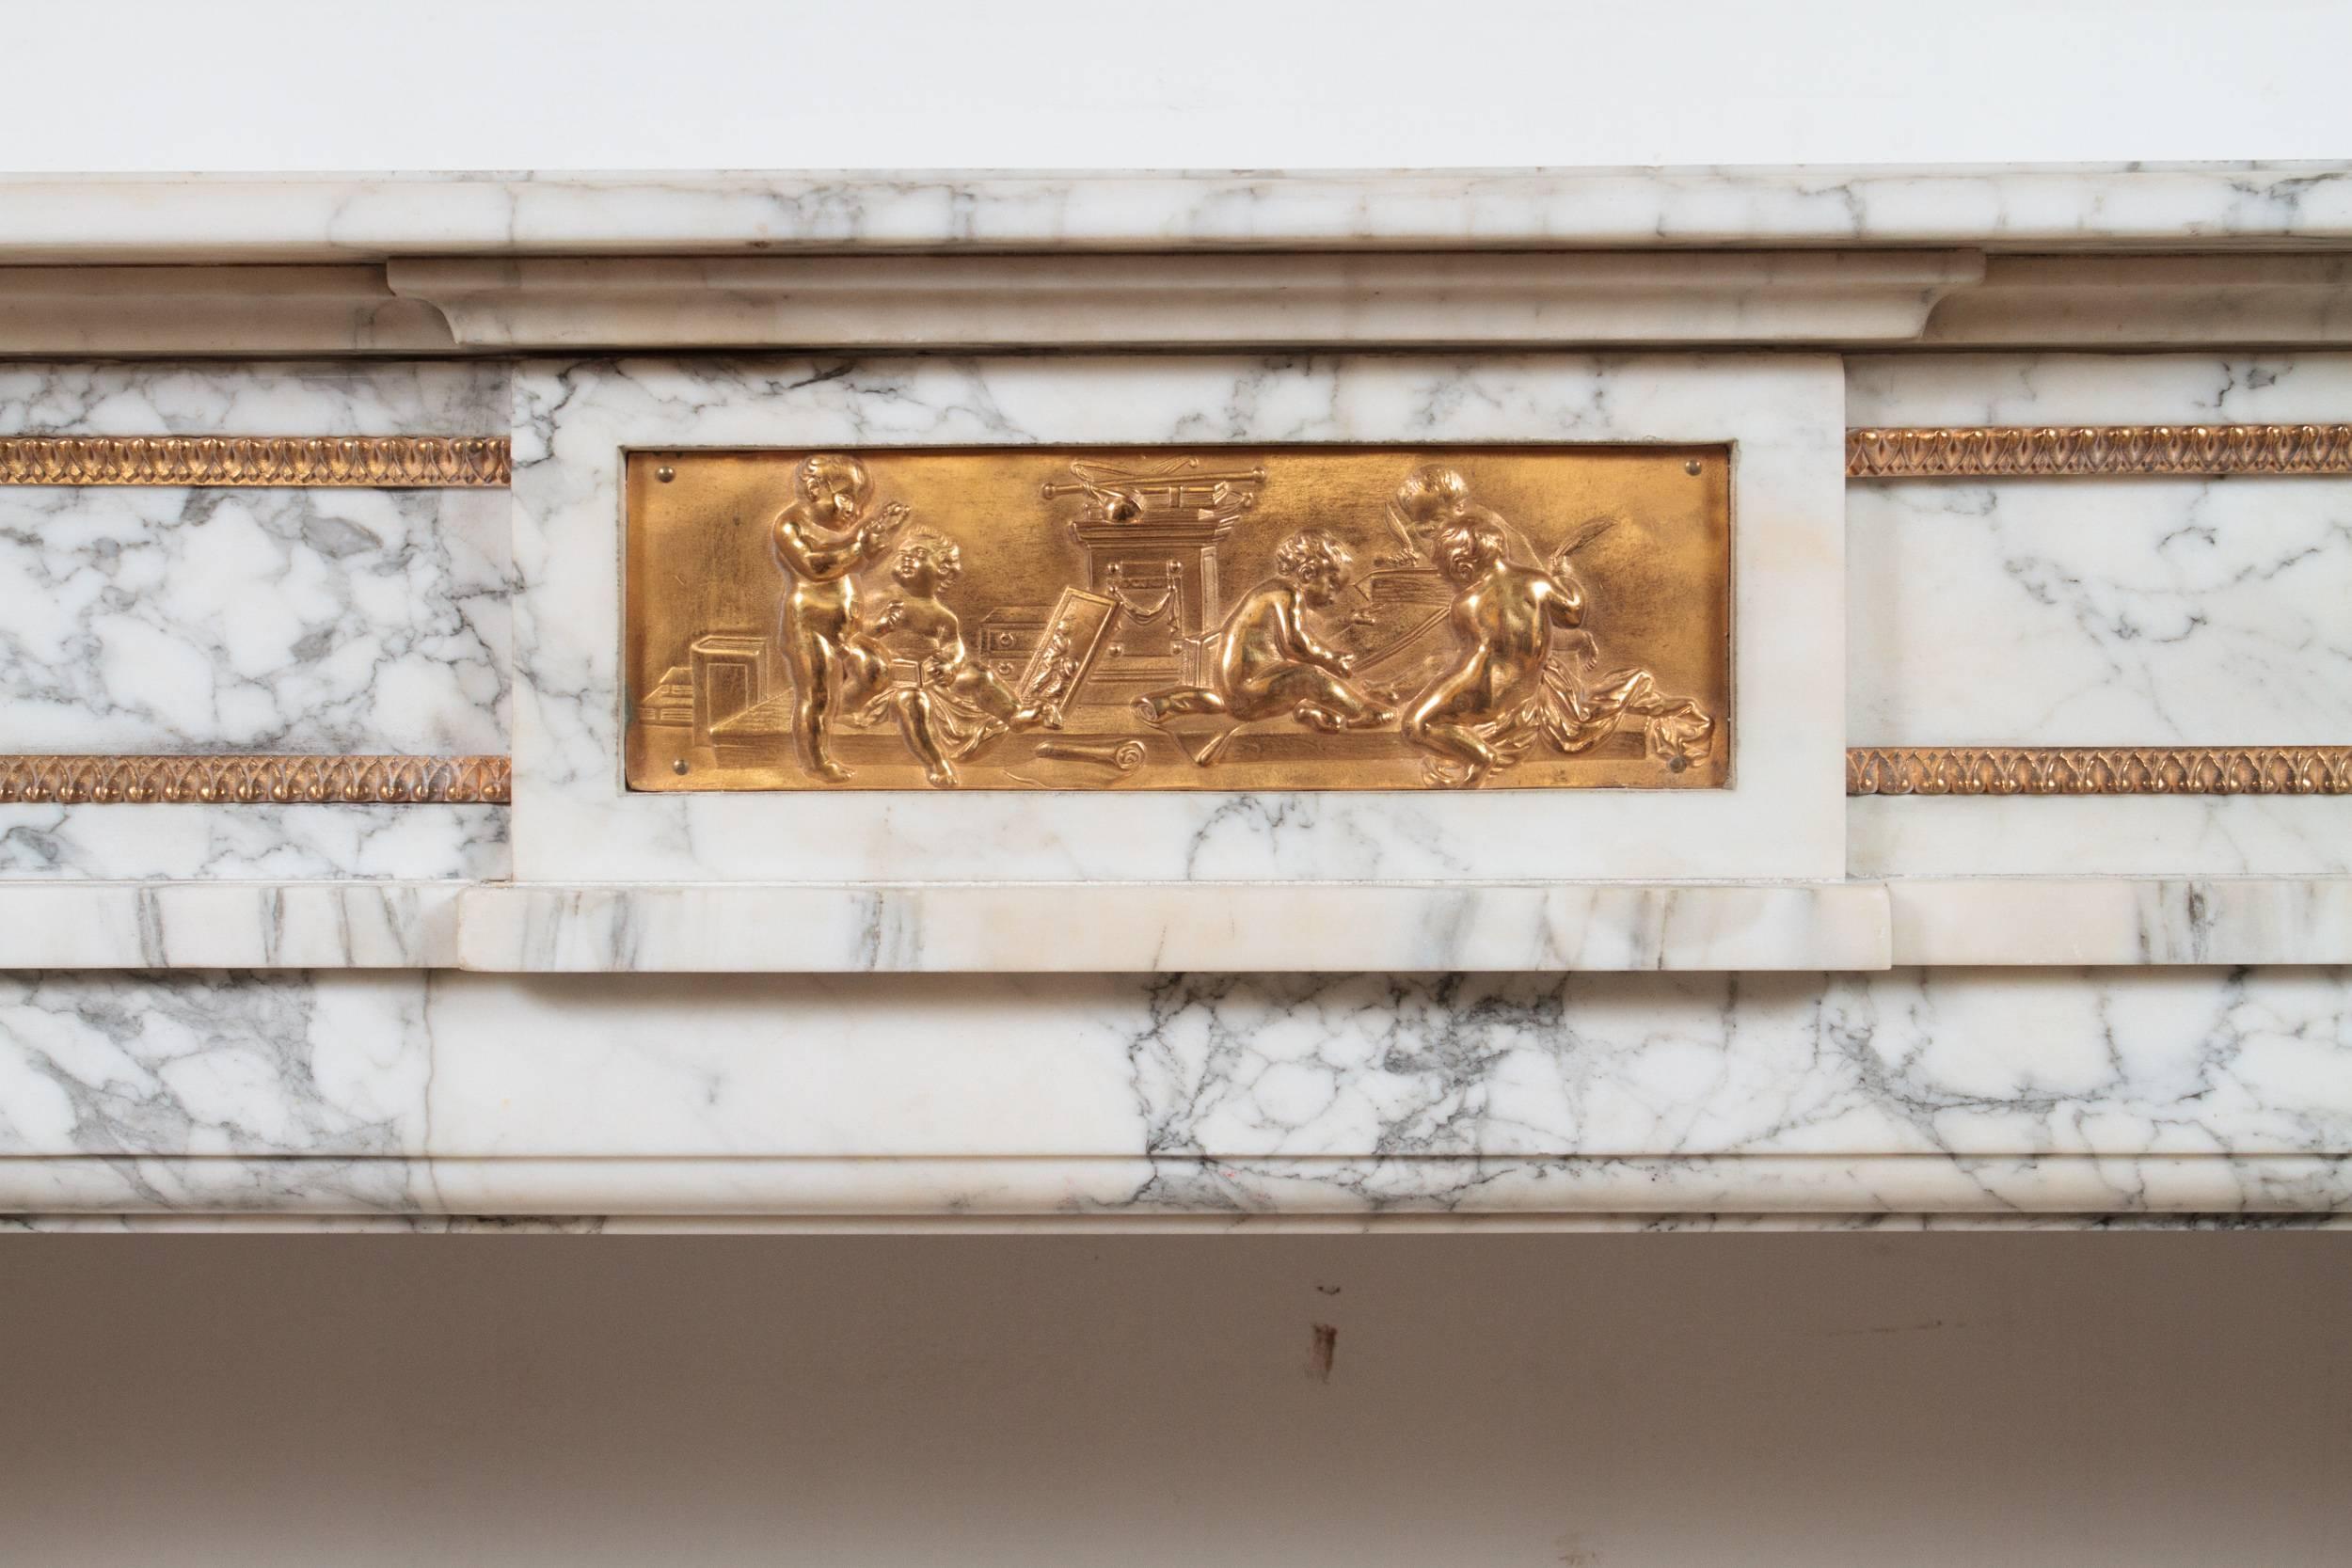 Cheminée en marbre Arabescato de style Louis XVI, d'époque Napoléon III, du XIXe siècle, munie d'un relief en bronze doré. Dimensions de l'ouverture : H : 35 L : 50 po.